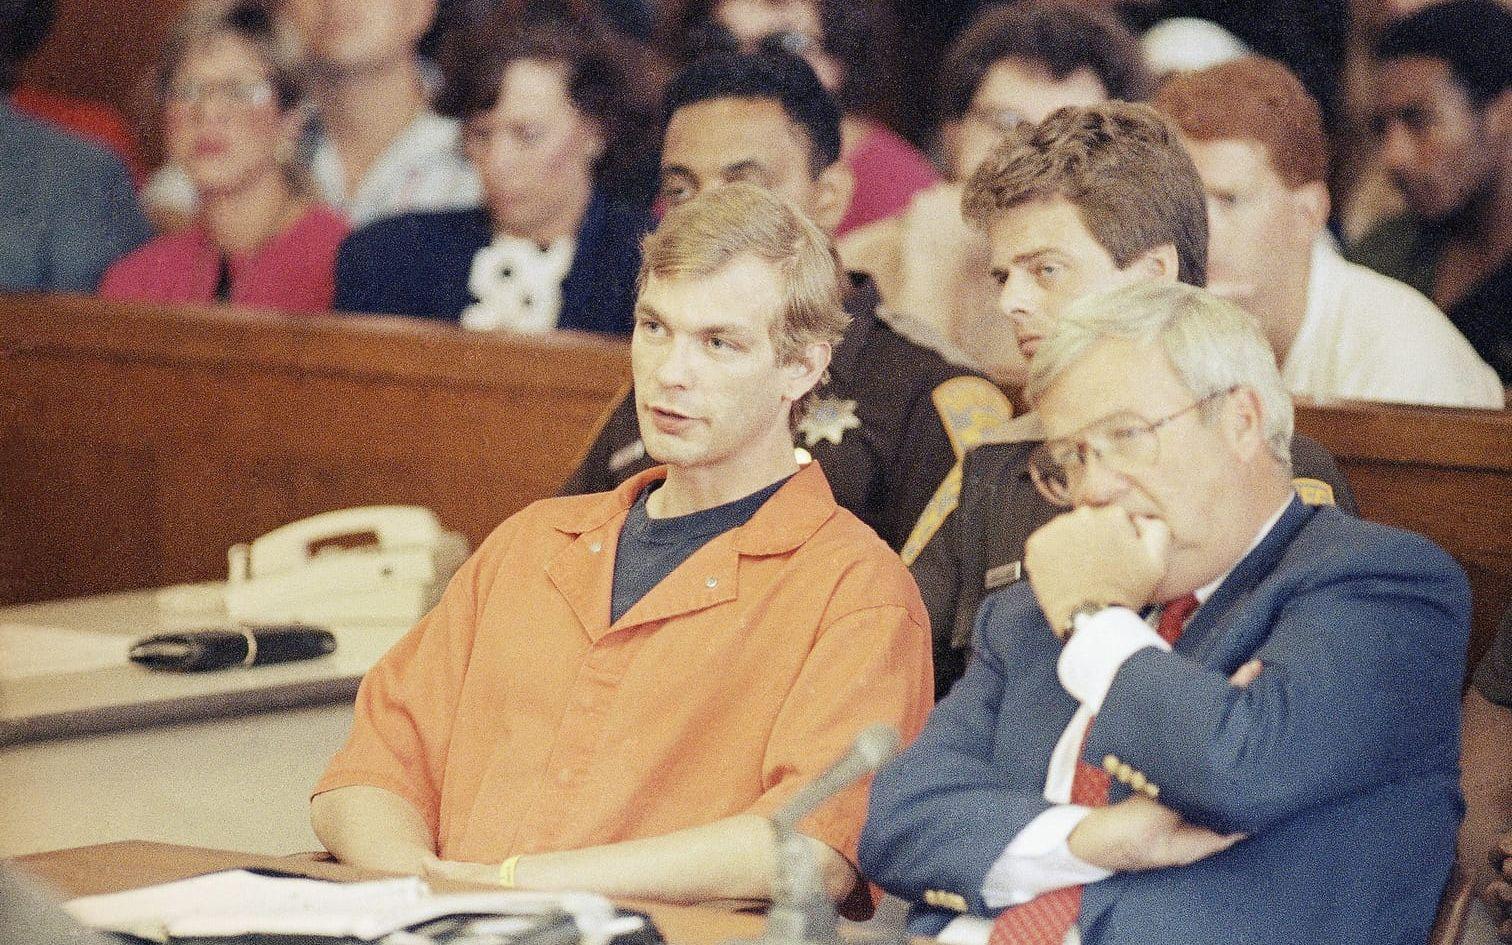 Jeffrey Dahmer dömdes till 15 livstidsstraff 1992 för morden på 17 personer. 1994 misshandlades han till döds av en medfånge.